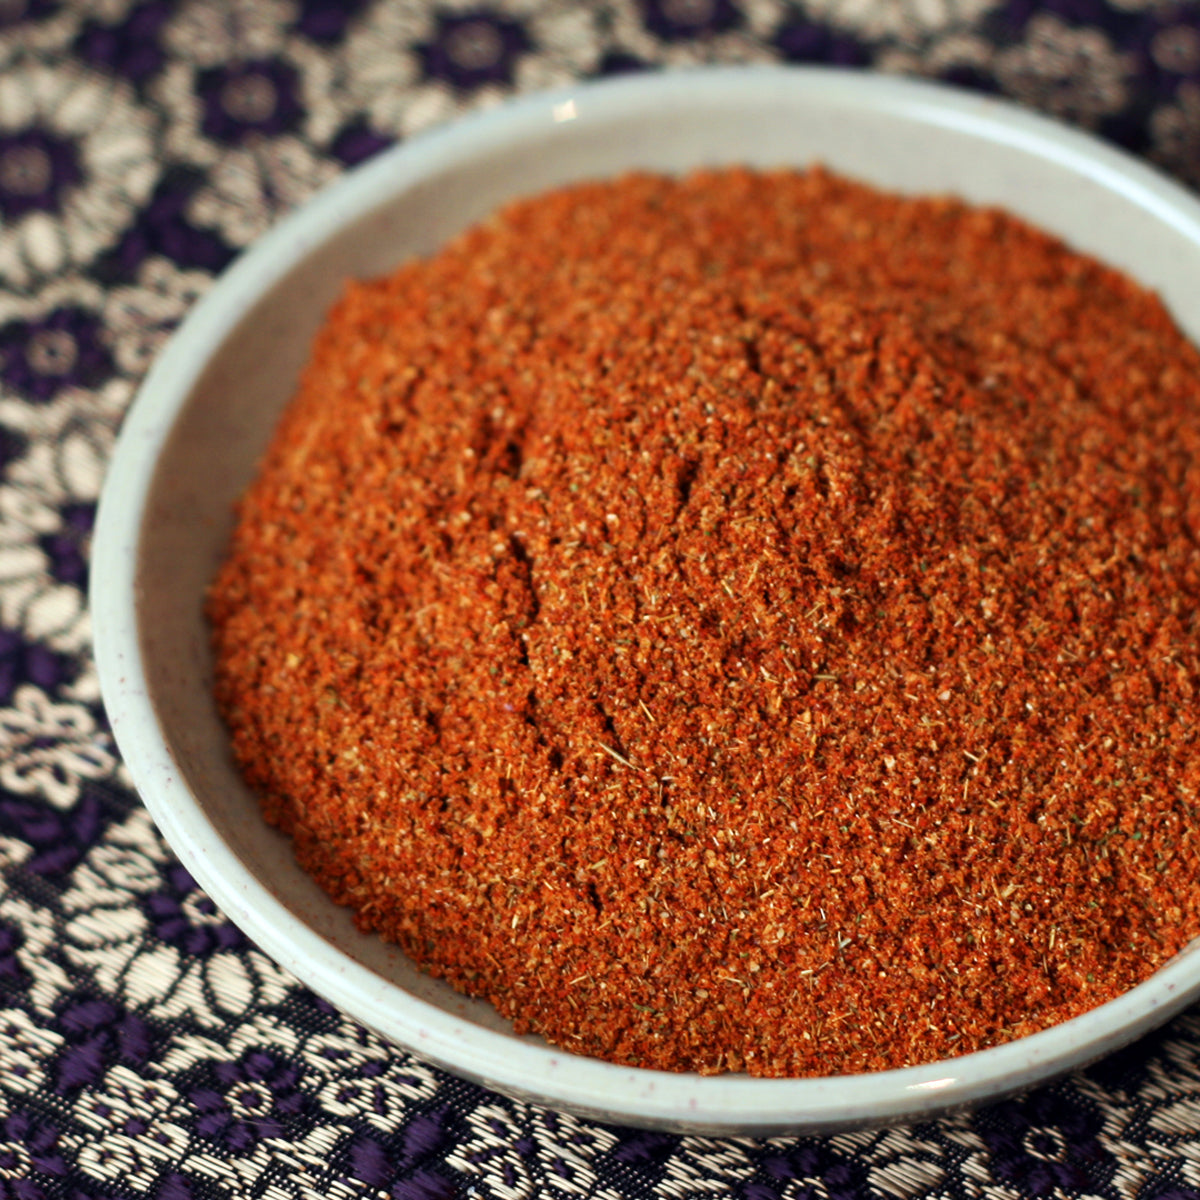 Thai Red Curry Powder